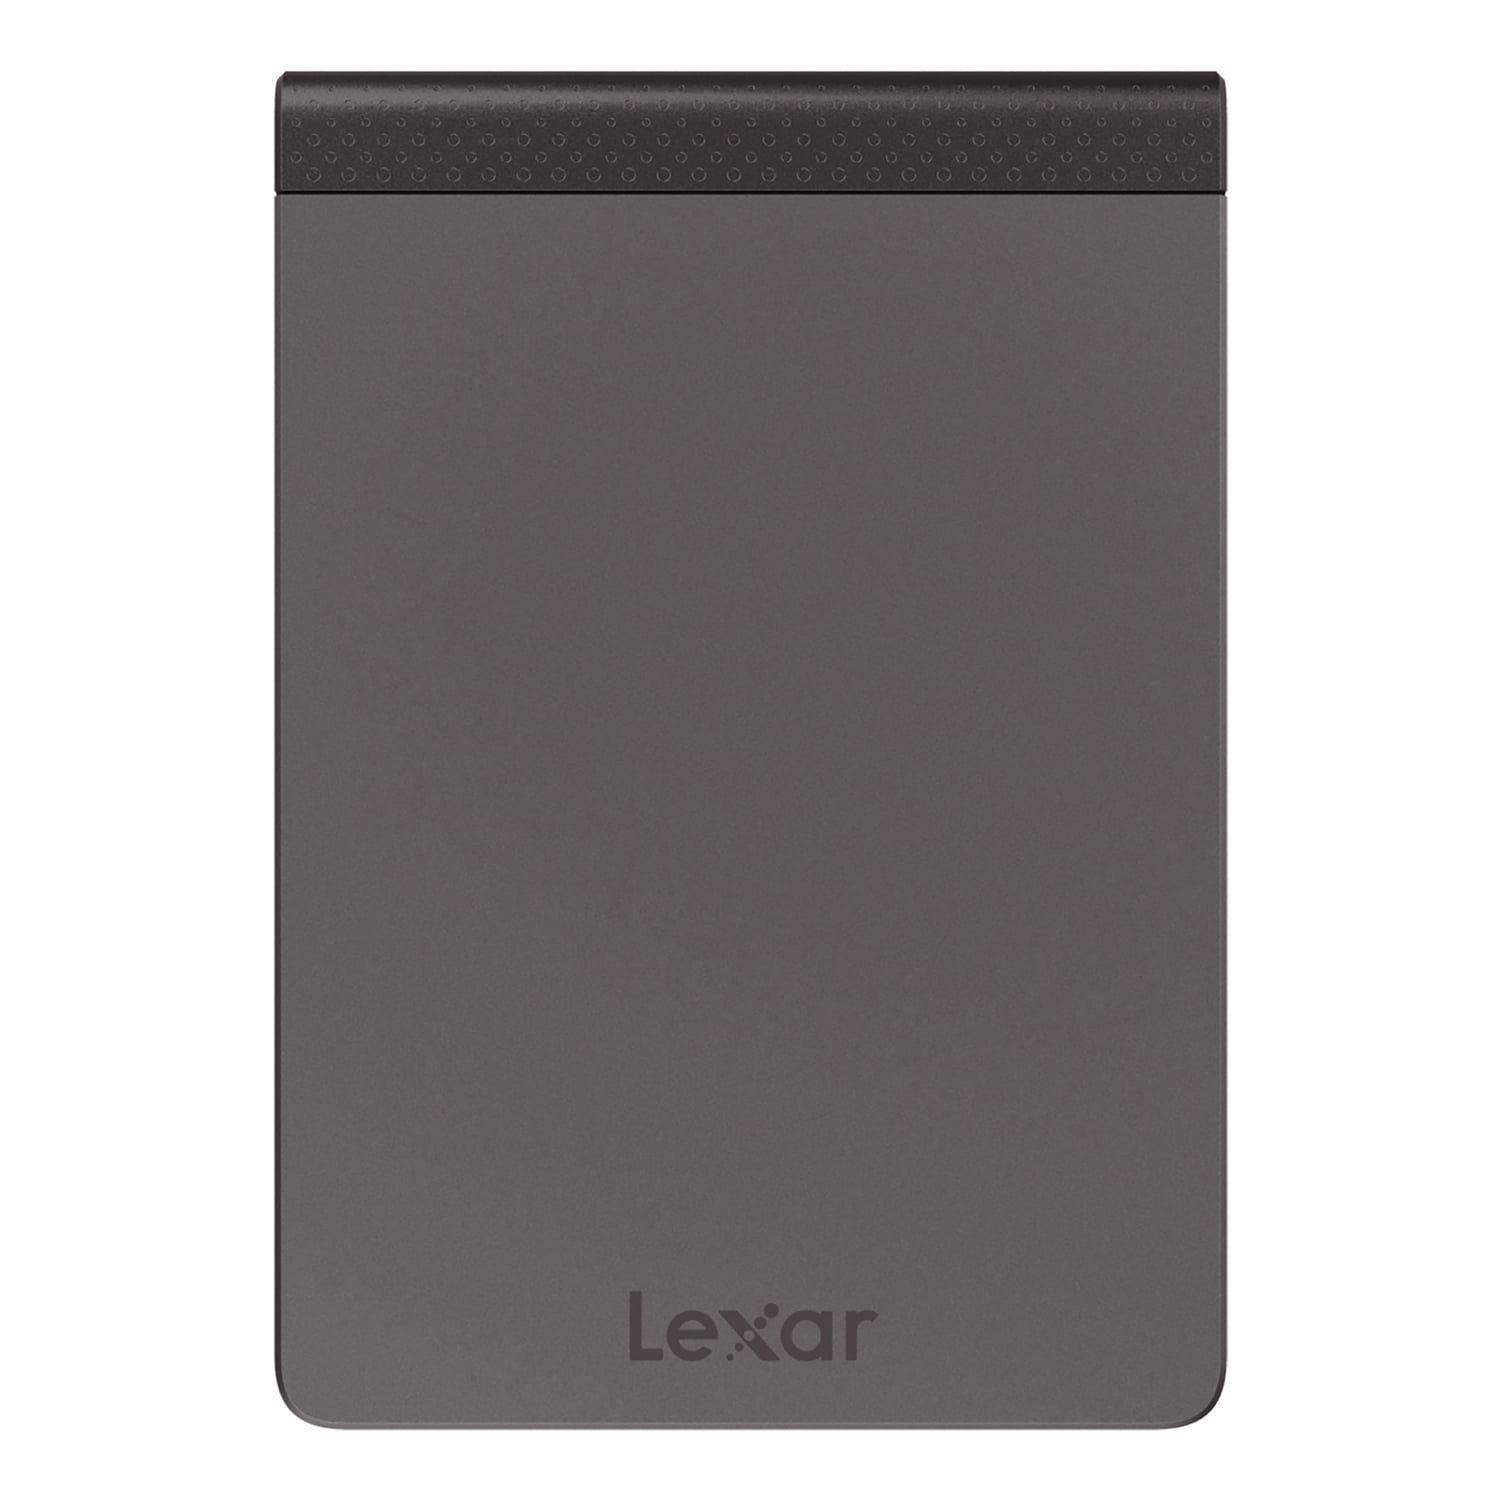 Lexar LSLXT RNNNU SL Portable Solid State Drive 2 TB